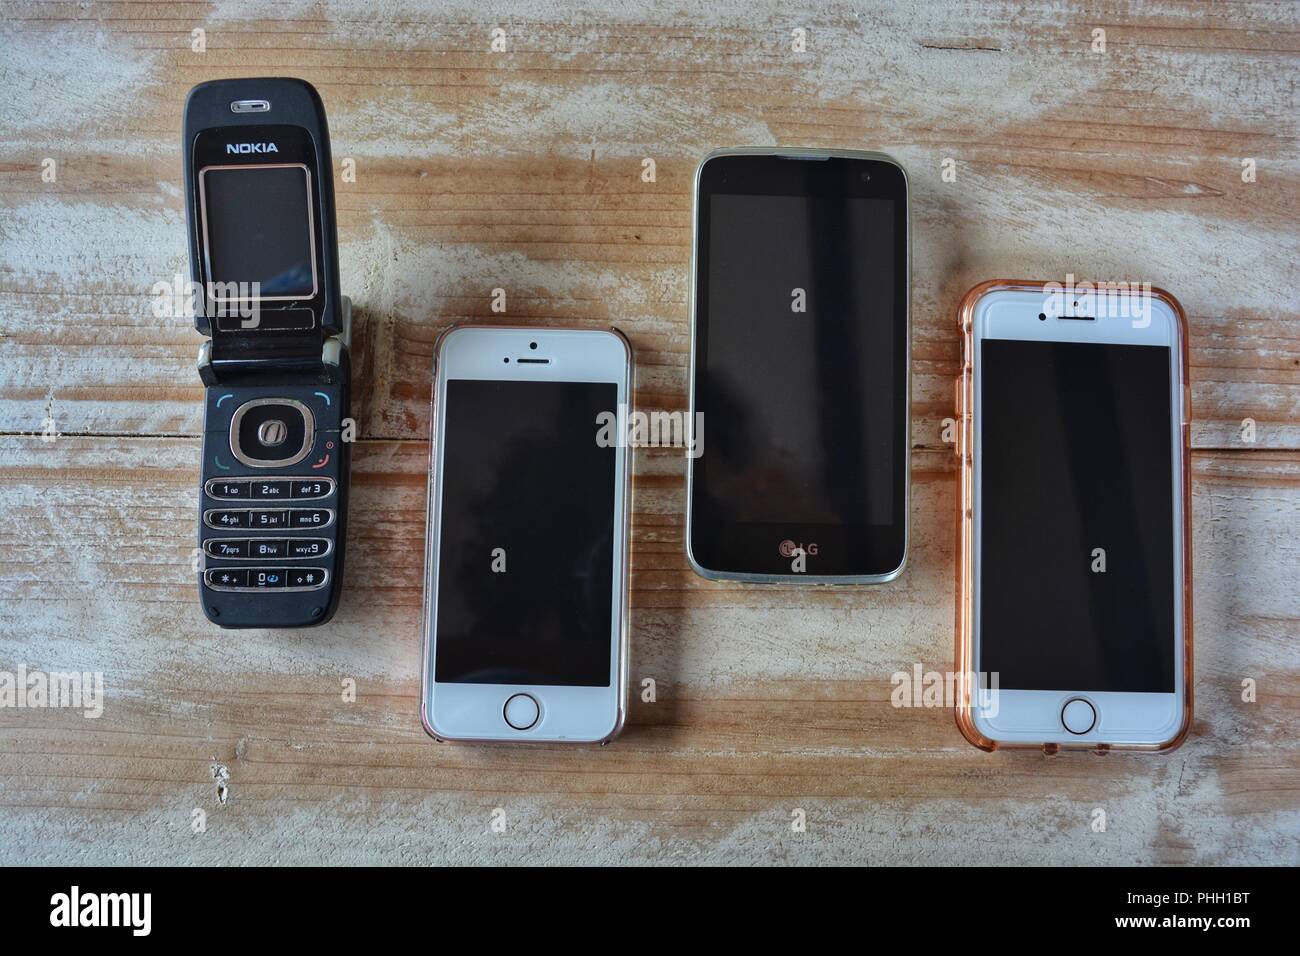 Flip Top Nokia Phone, iPhone XE, LG et l'iPhone7 sur une table en bois avec copie espace Banque D'Images